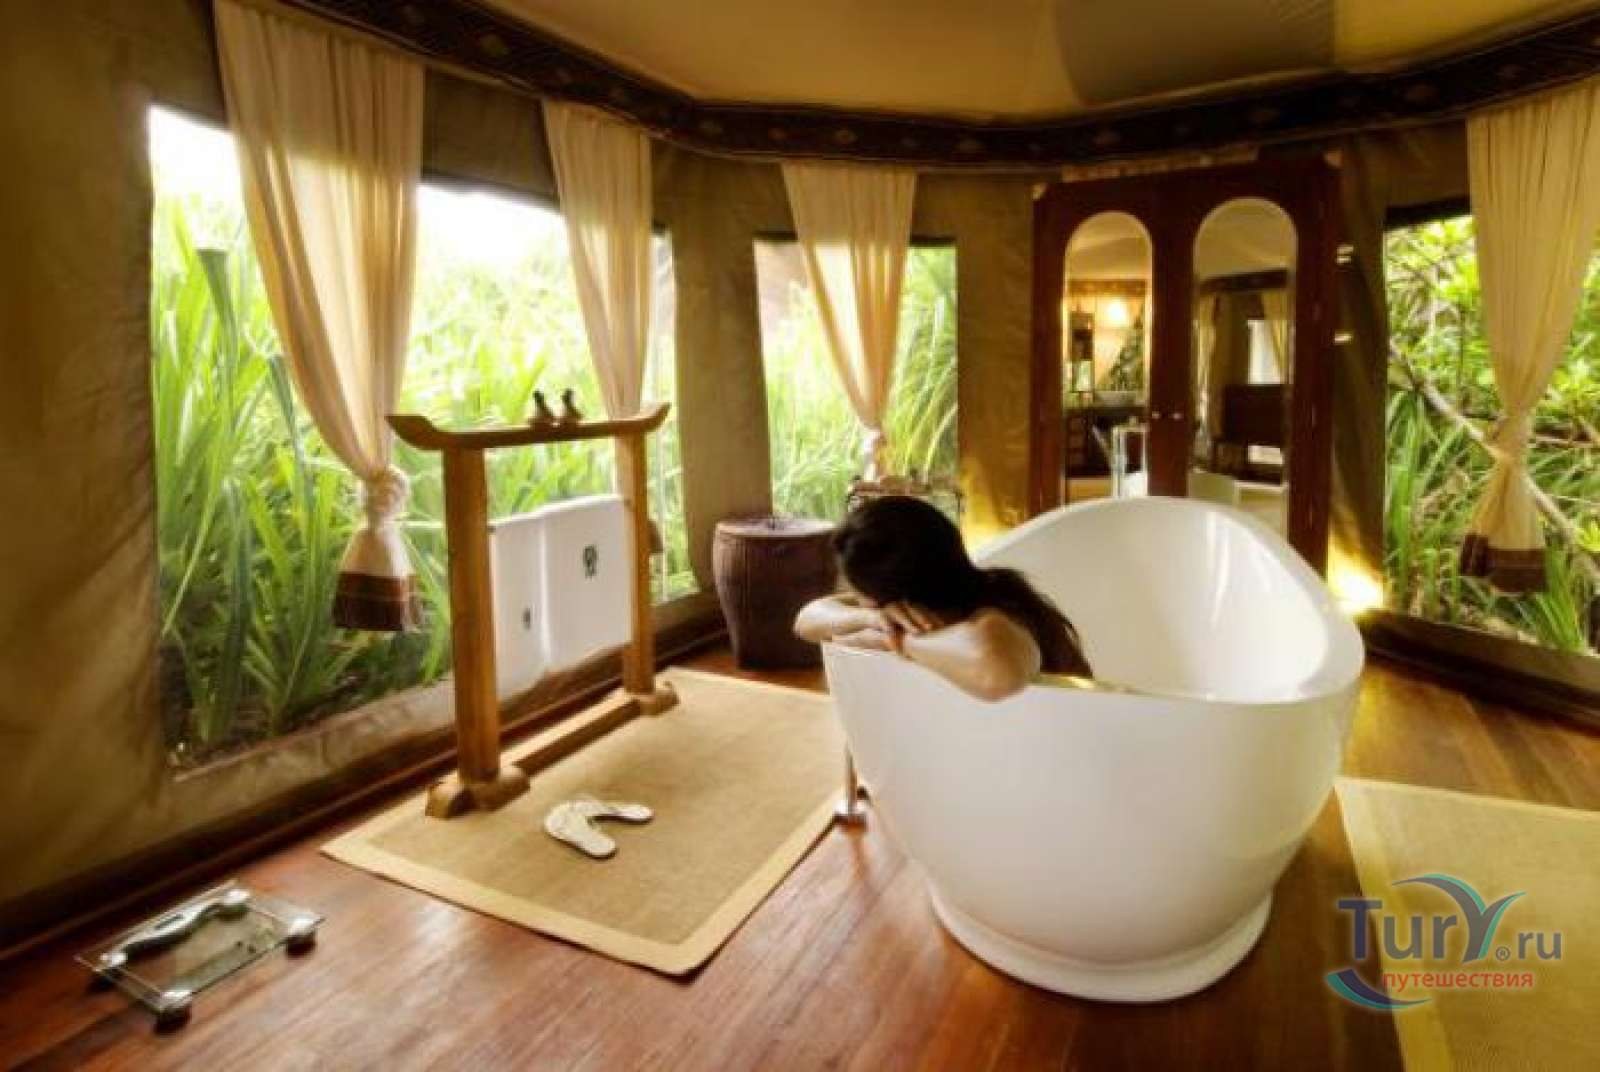 Место релакса. Banyan Tree Madivaru отель. Banyan Tree Maldives палатки. Ванная комната в тайском стиле. Ванные комнаты для релаксации.